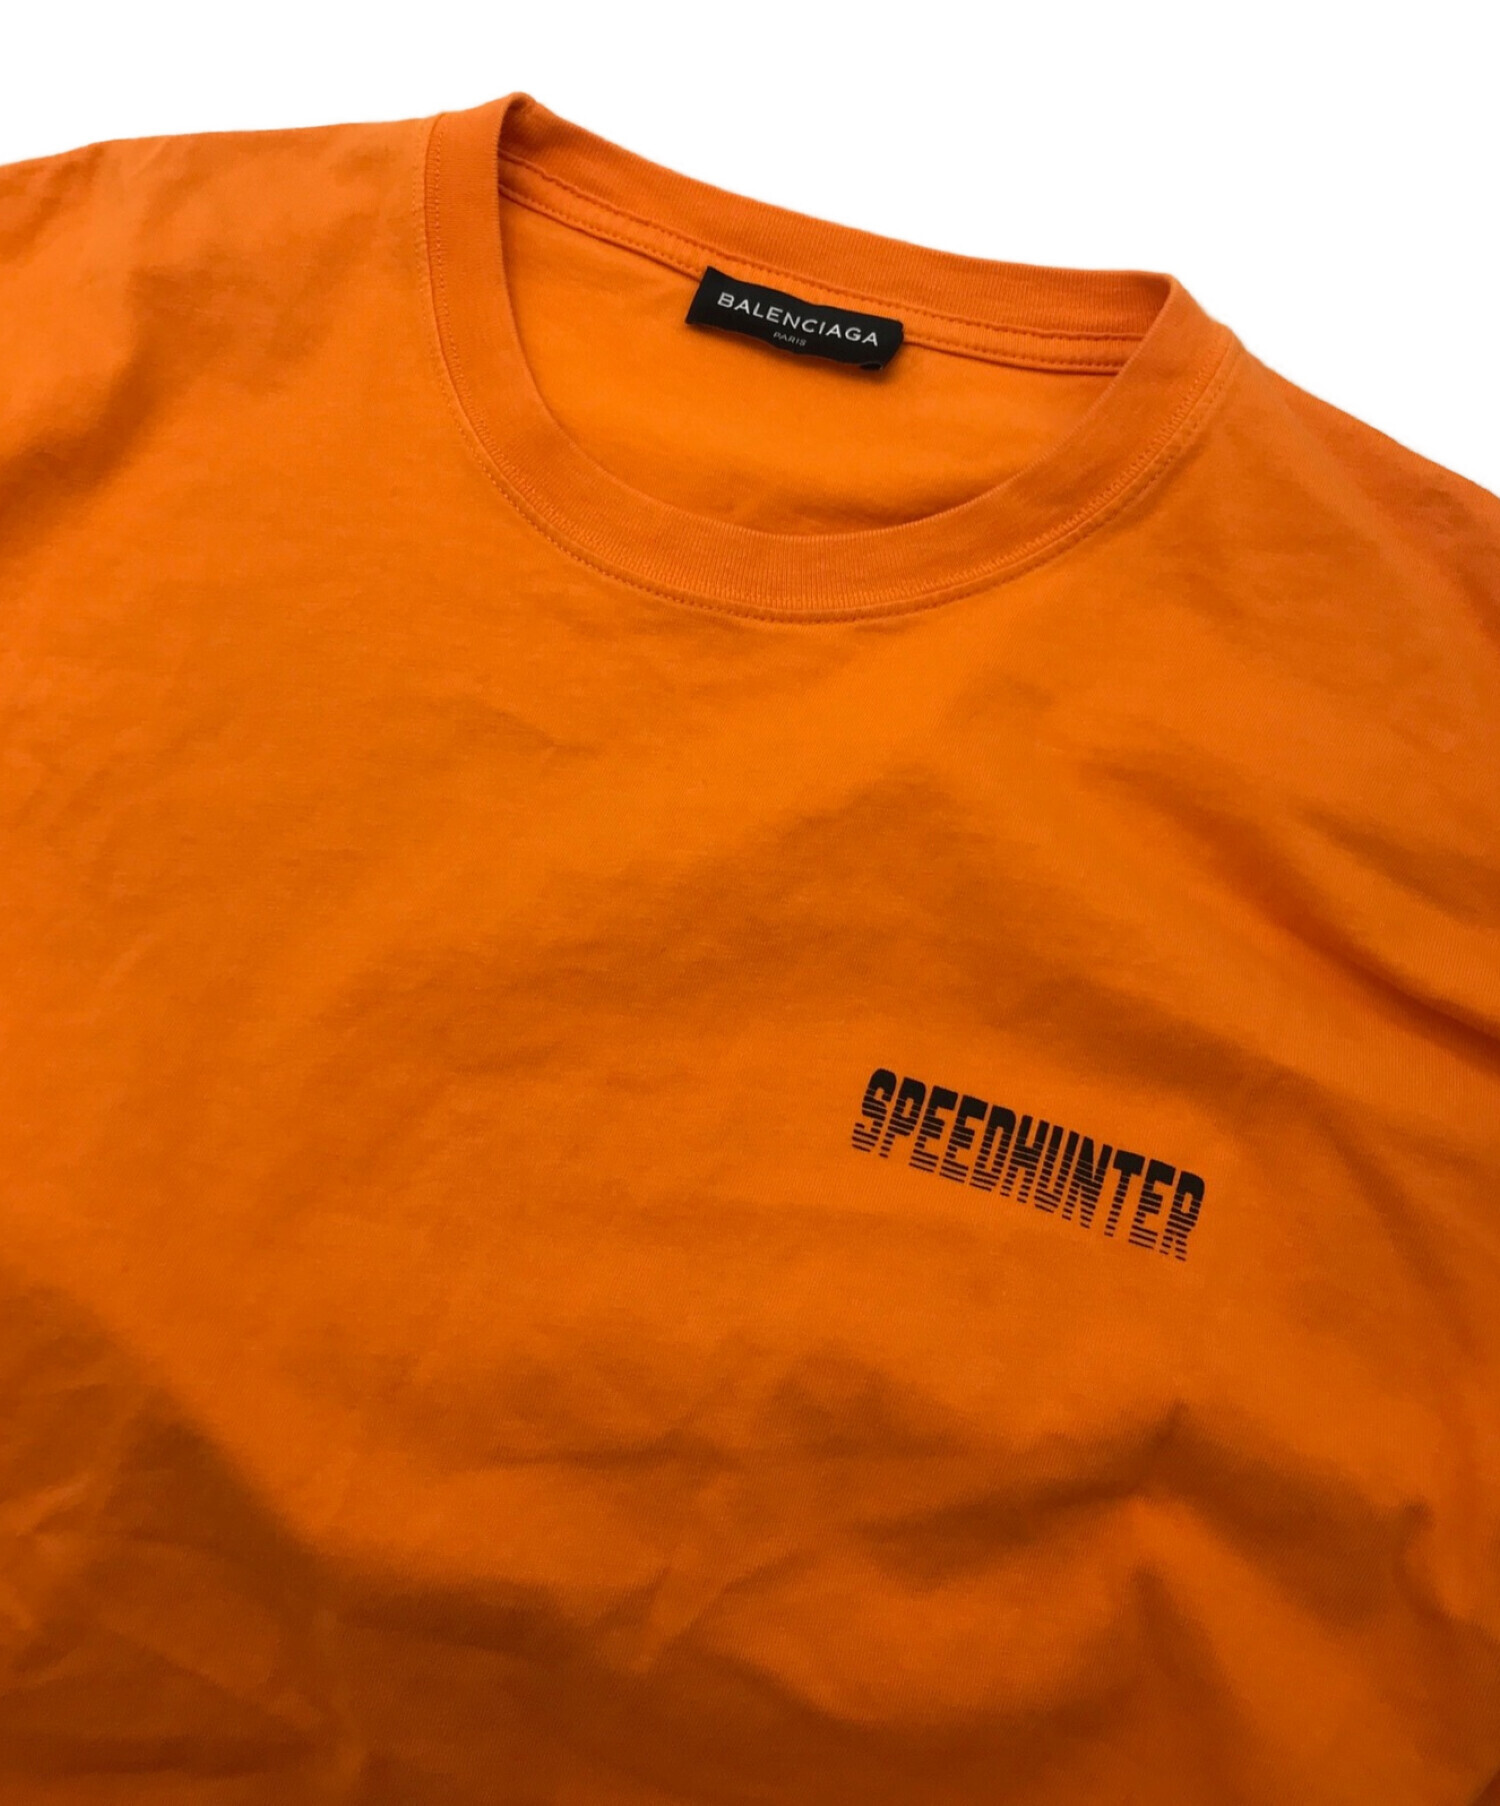 BALENCIAGA (バレンシアガ) スピードハンタープリントTシャツ オレンジ サイズ:M